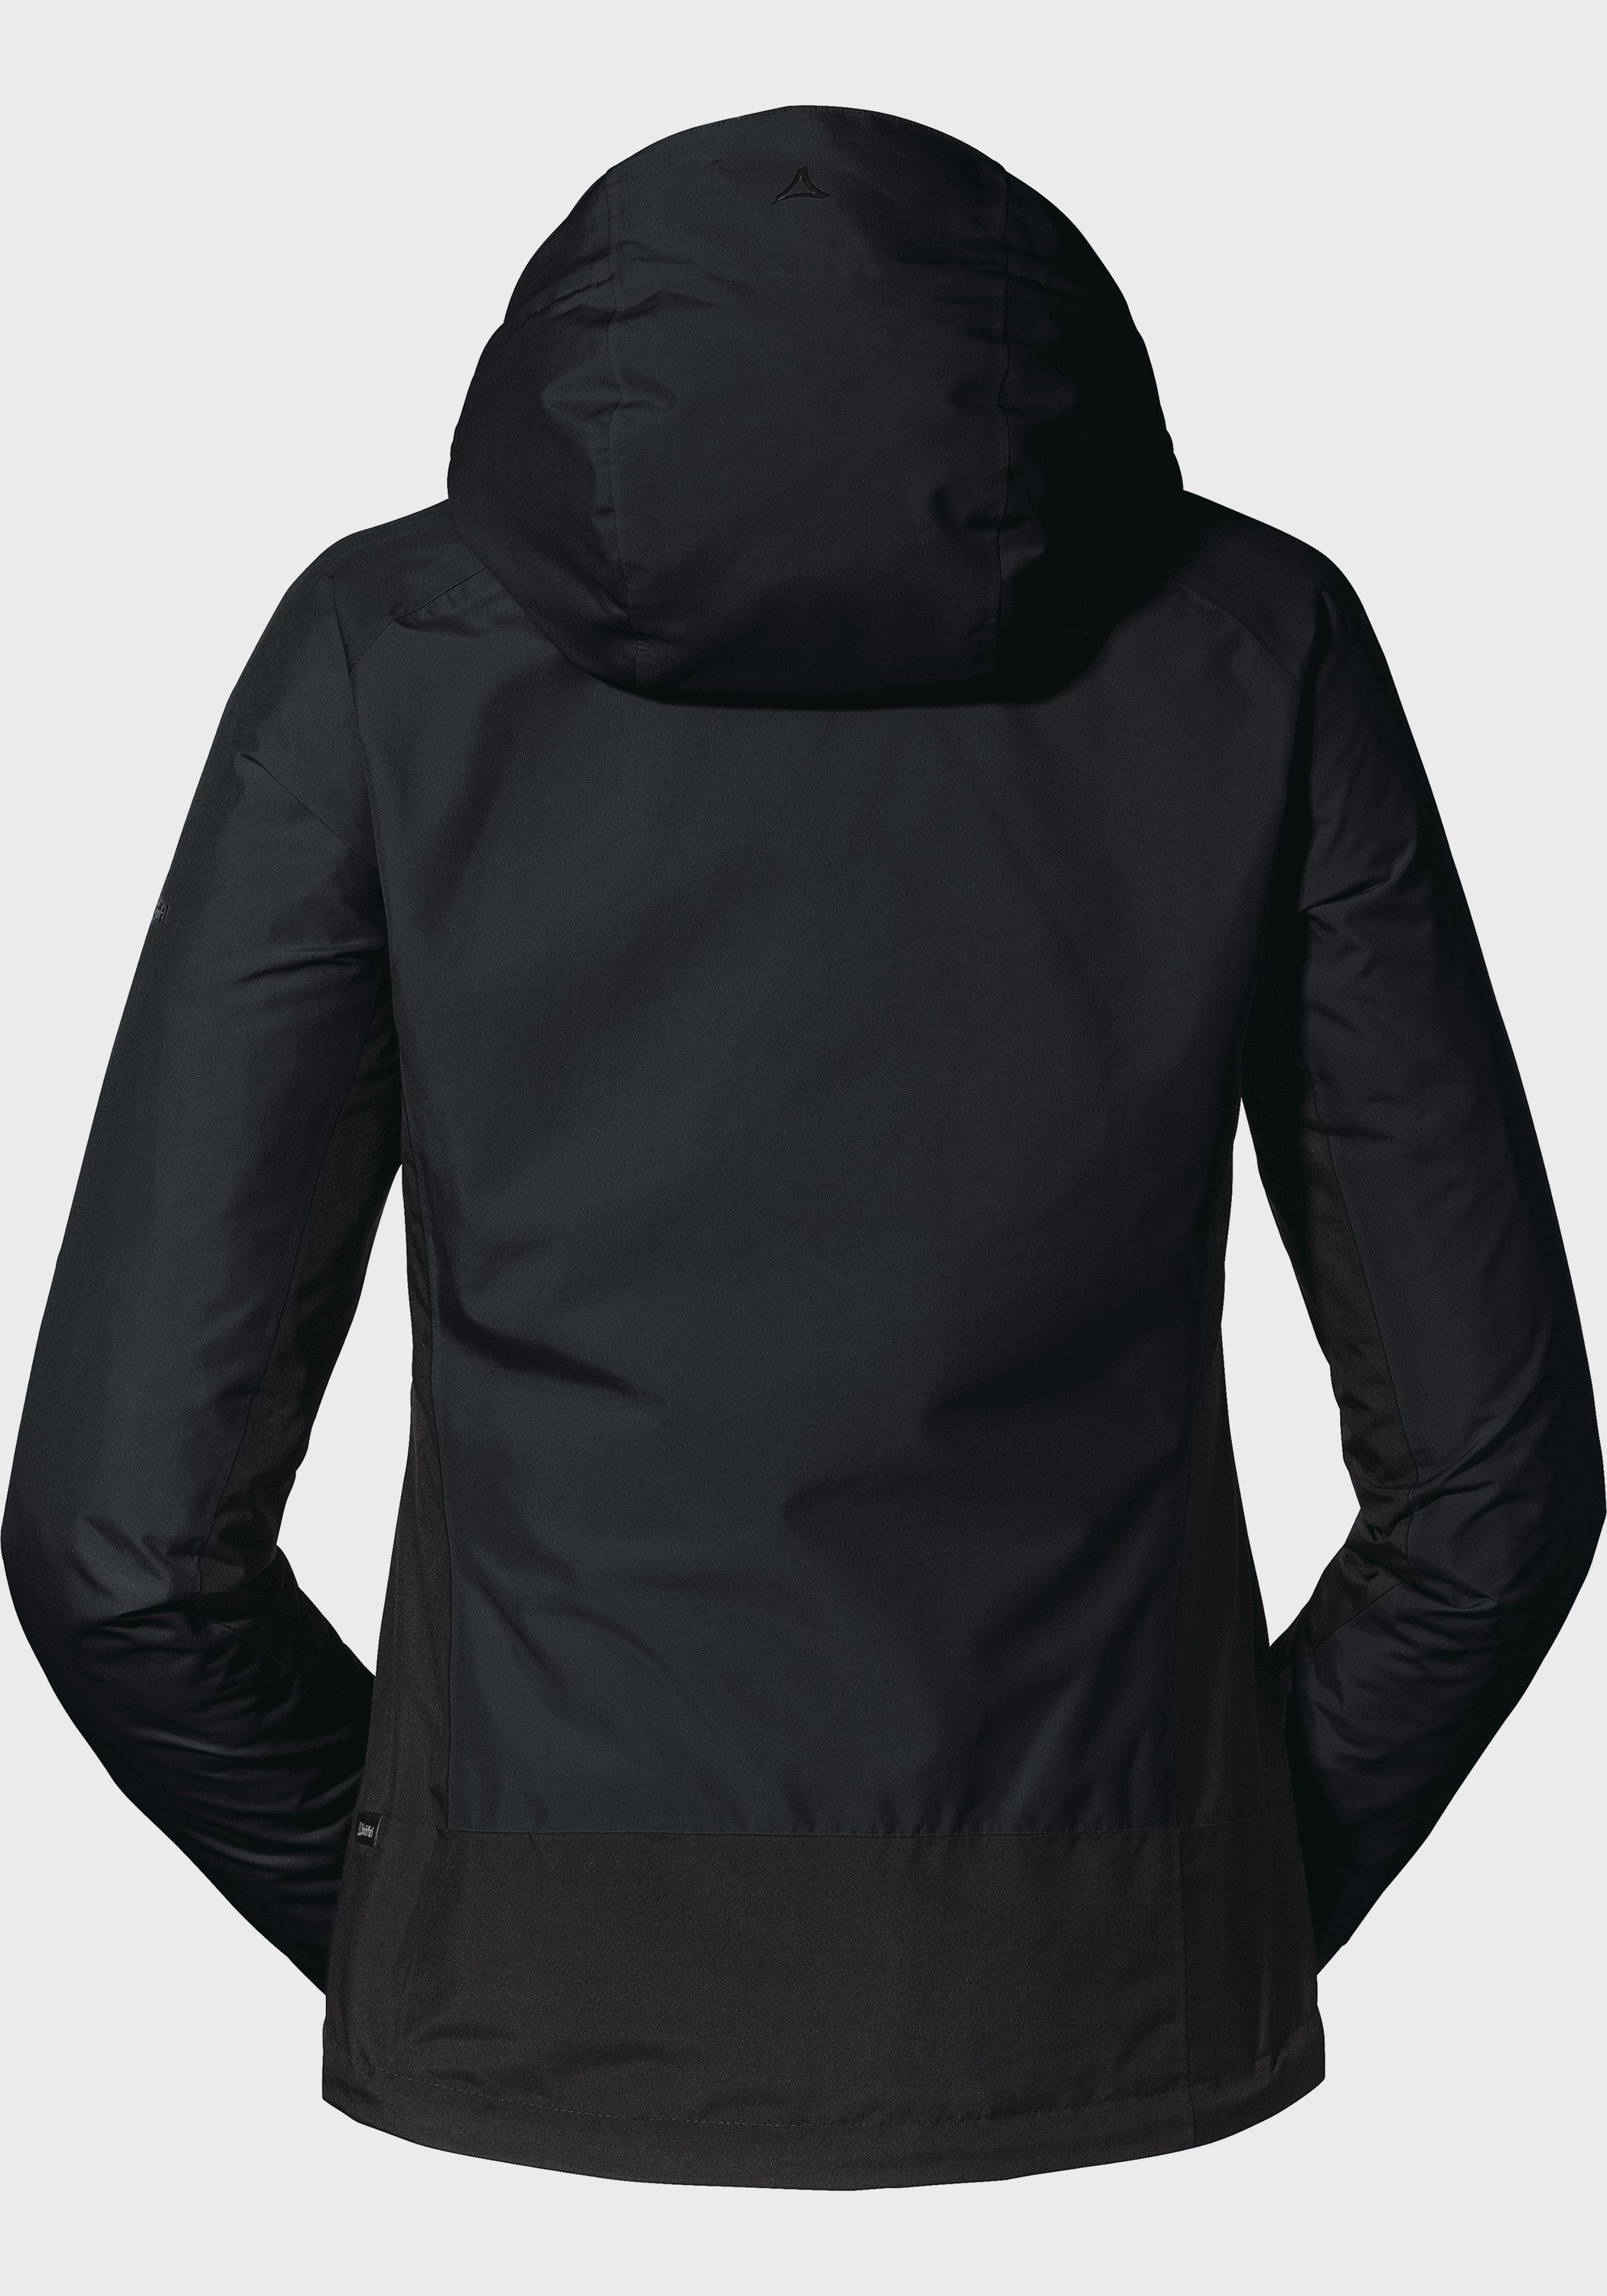 Jacket schwarz Wamberg Schöffel Outdoorjacke L